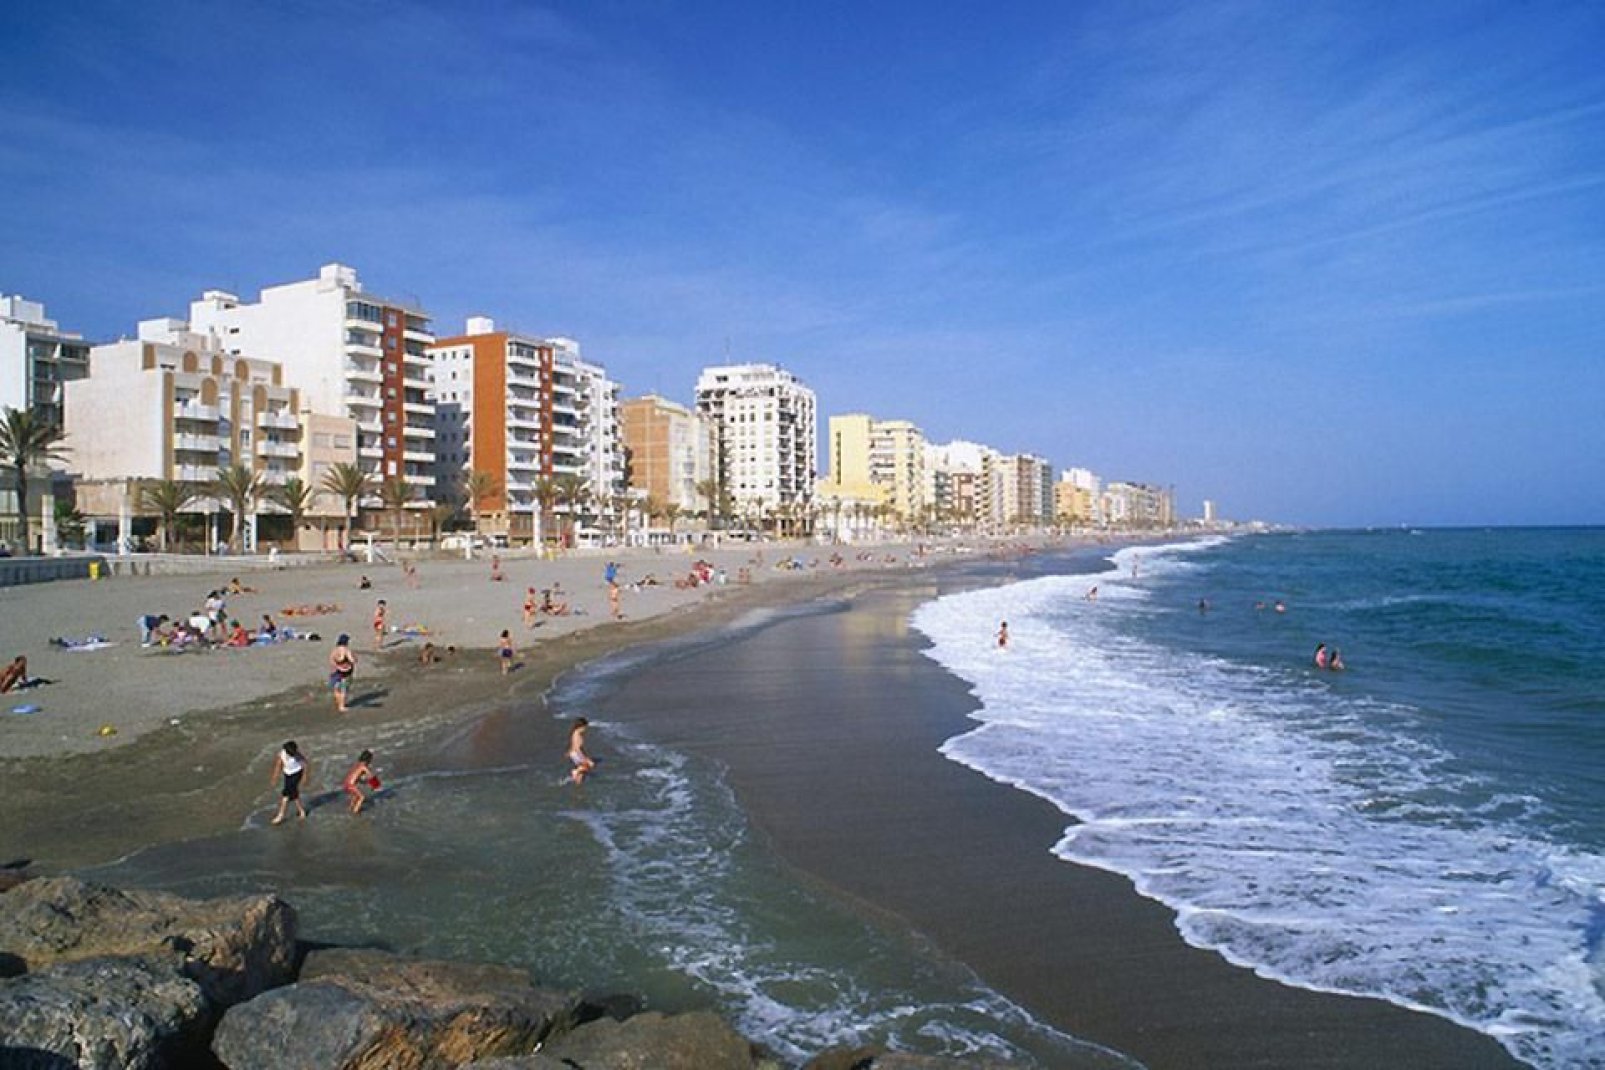 Almería è famosa per le sue spiagge di sabbia fine. Vi si trova inoltre la più grande spiaggia di nudisti d'Europa.